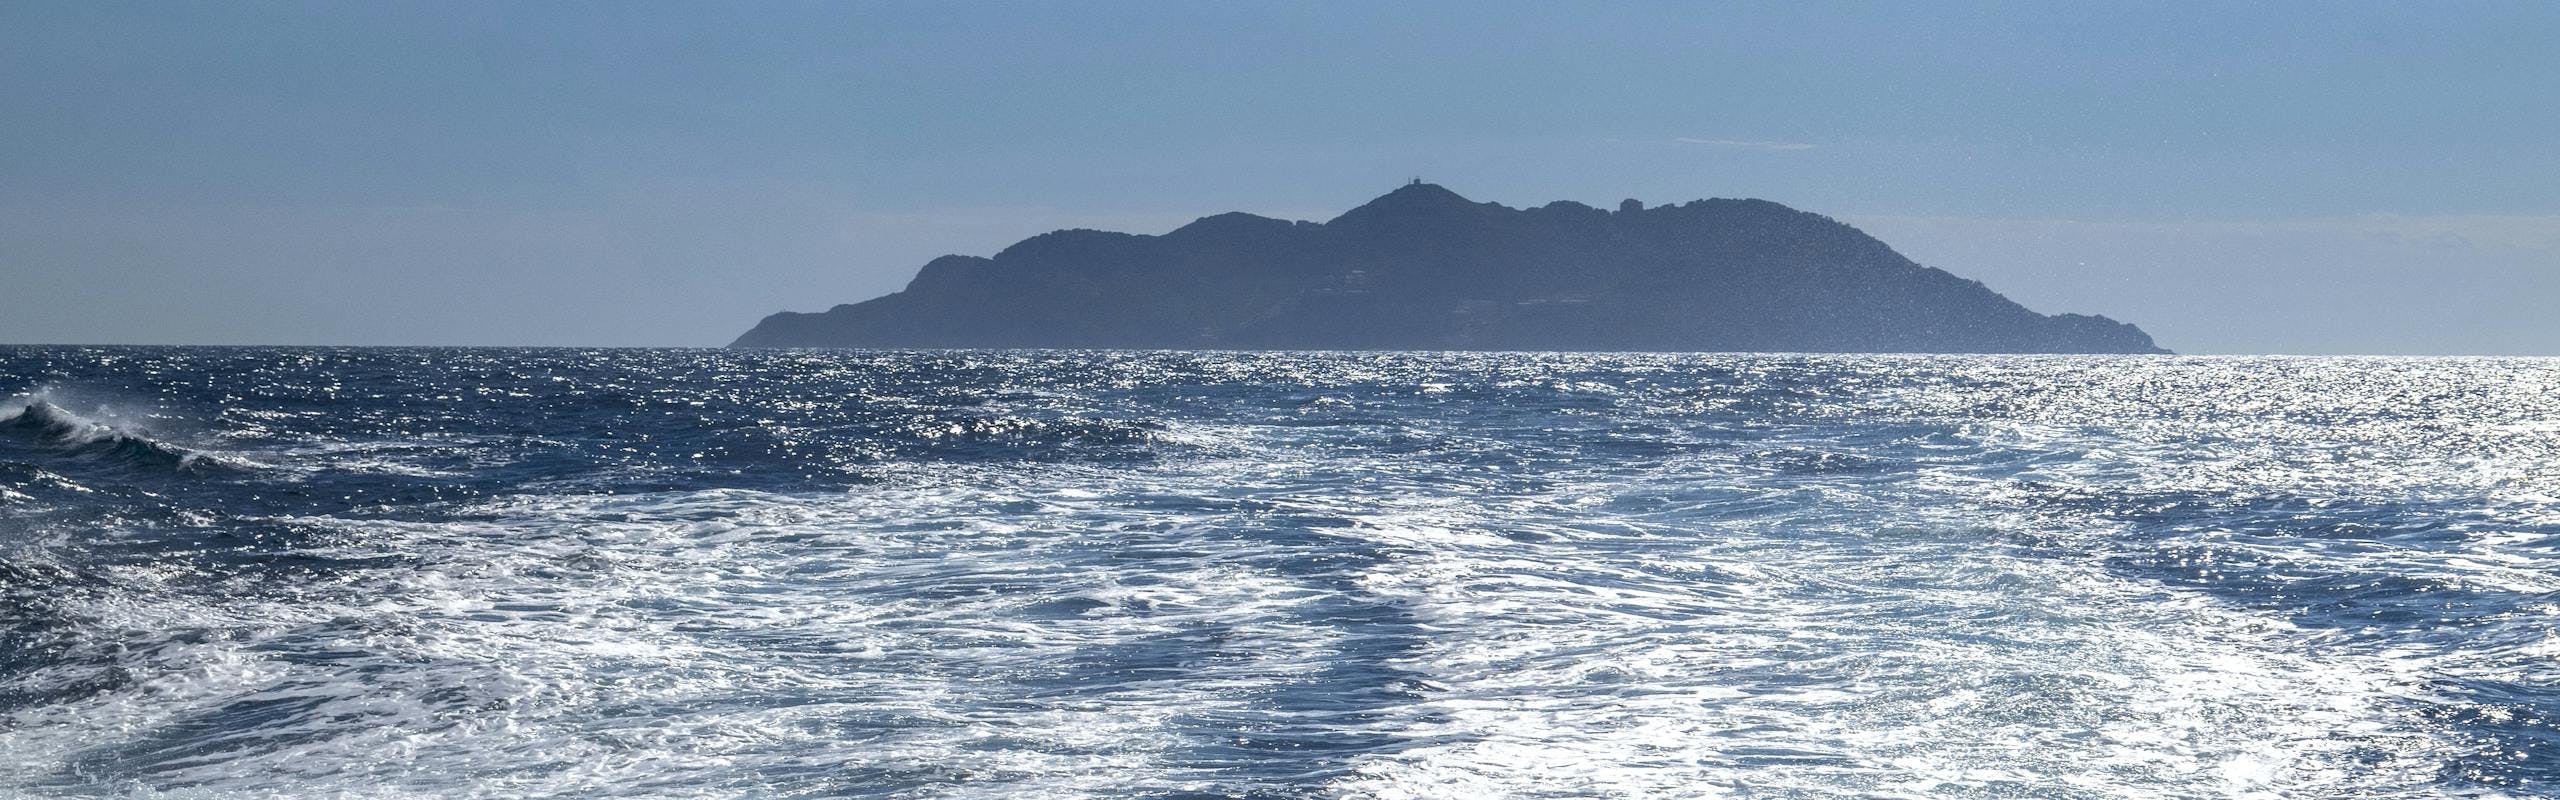 L'Isola di Gorgona nel Mar Ligure